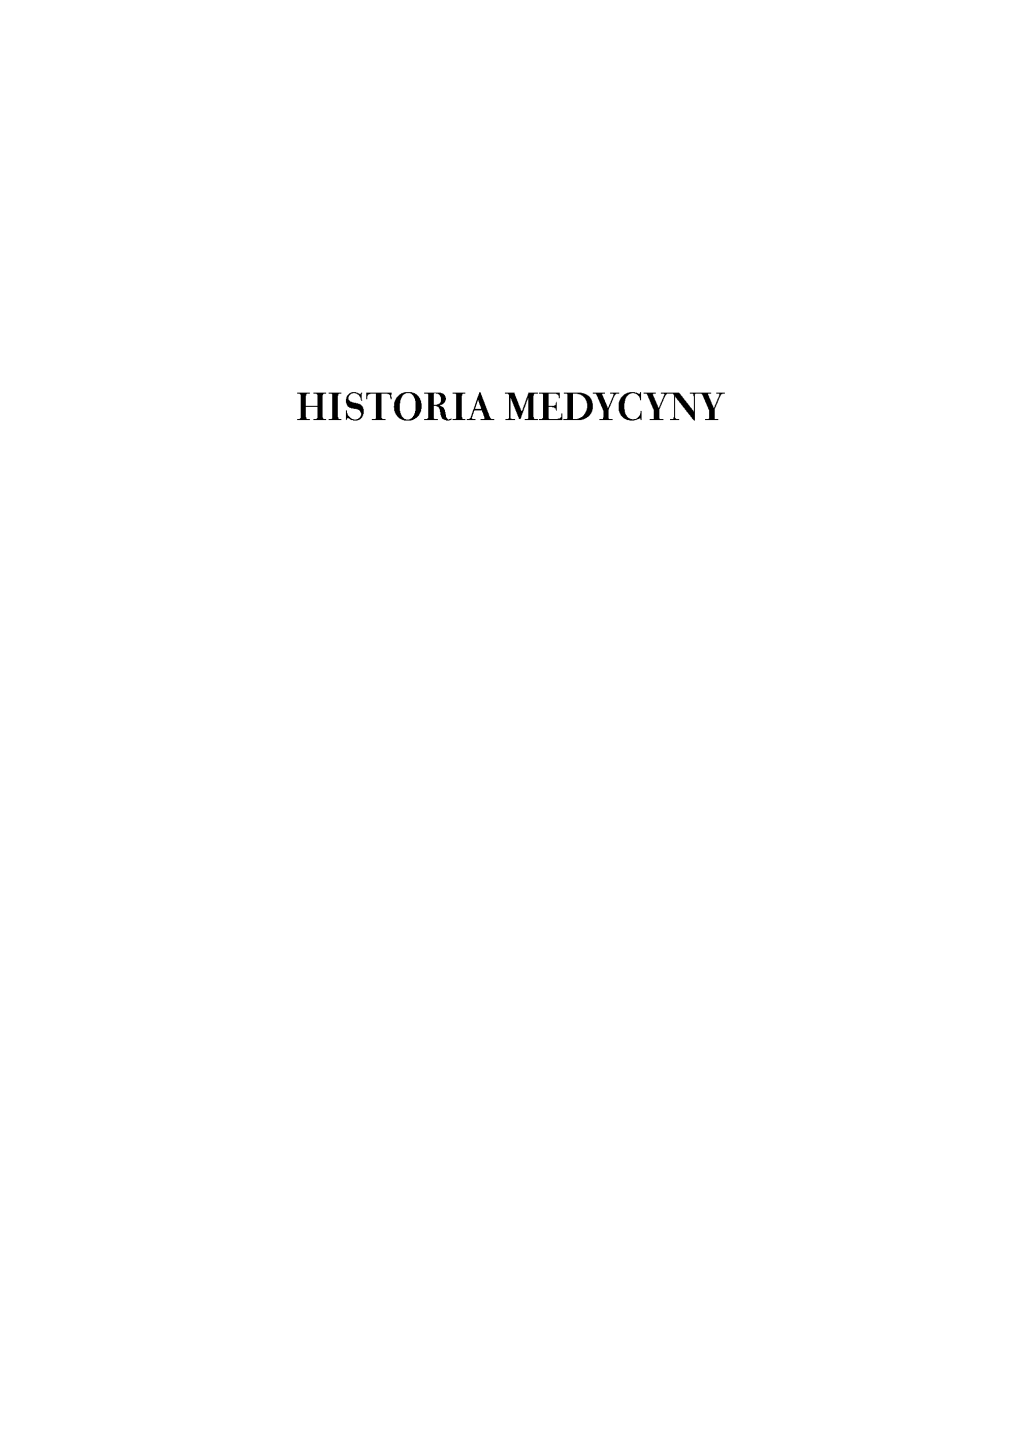 Historia Medycyny Jako Przedmiot Badań I Nauczania W Krakowskim Środowisku Uniwersyteckim W Latach 1809-1914